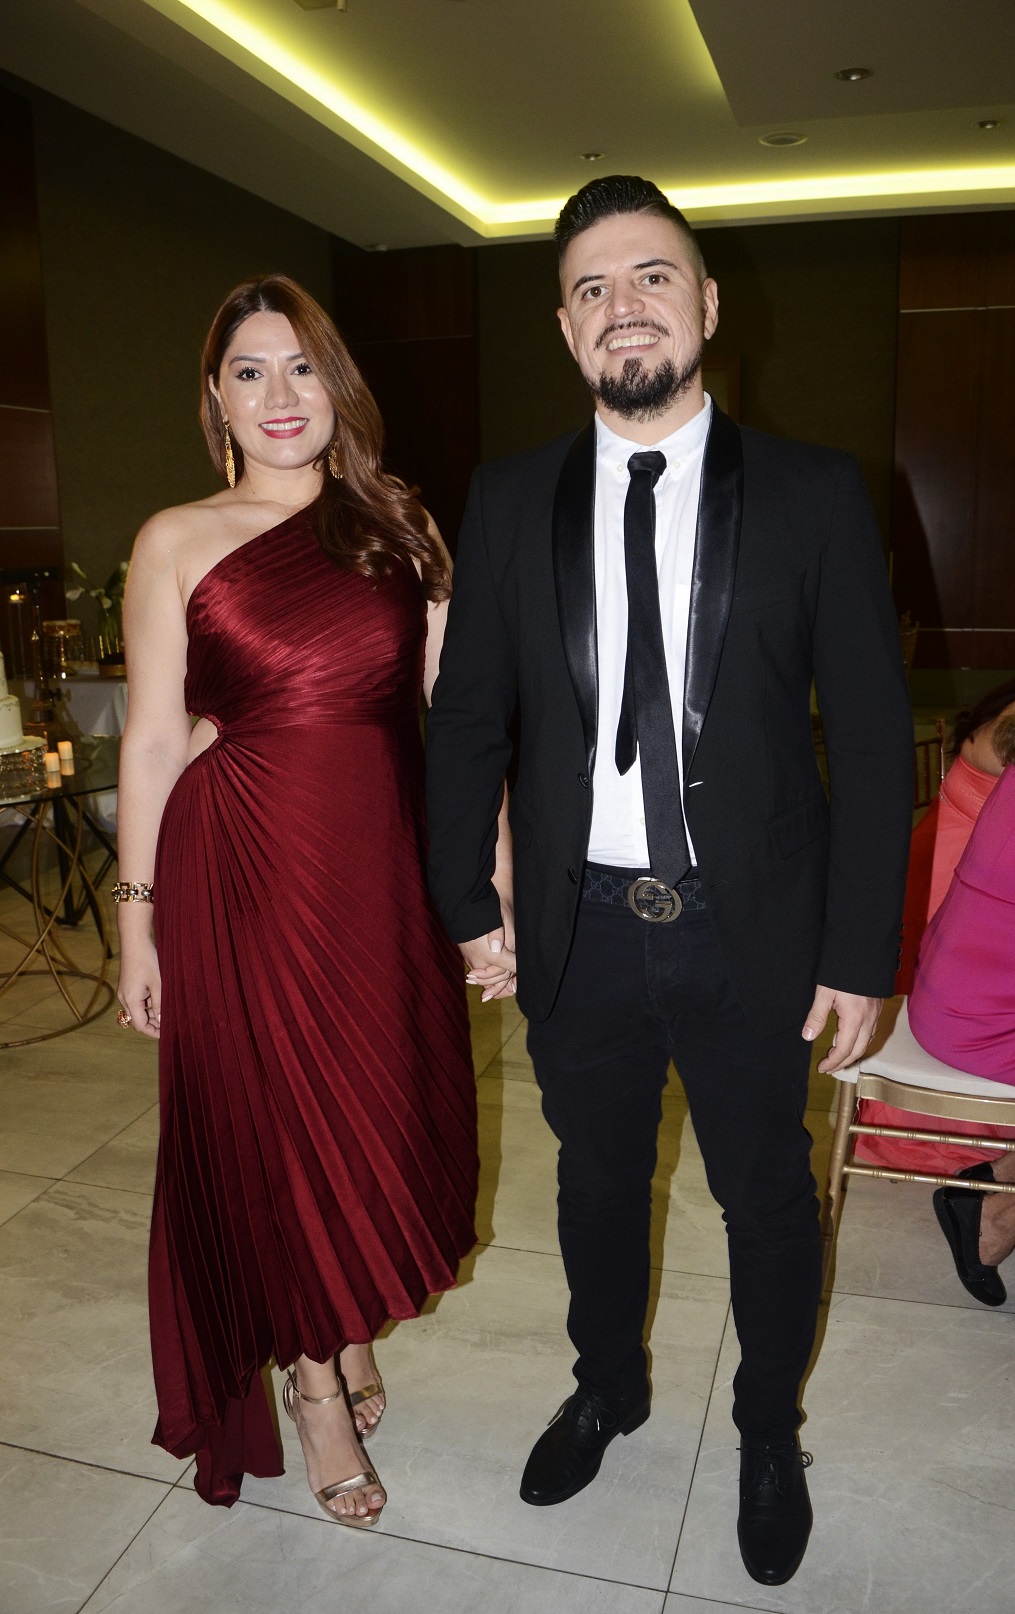 Felicitaciones y buenos augurios para los nuevos esposos Rodríguez - Martínez